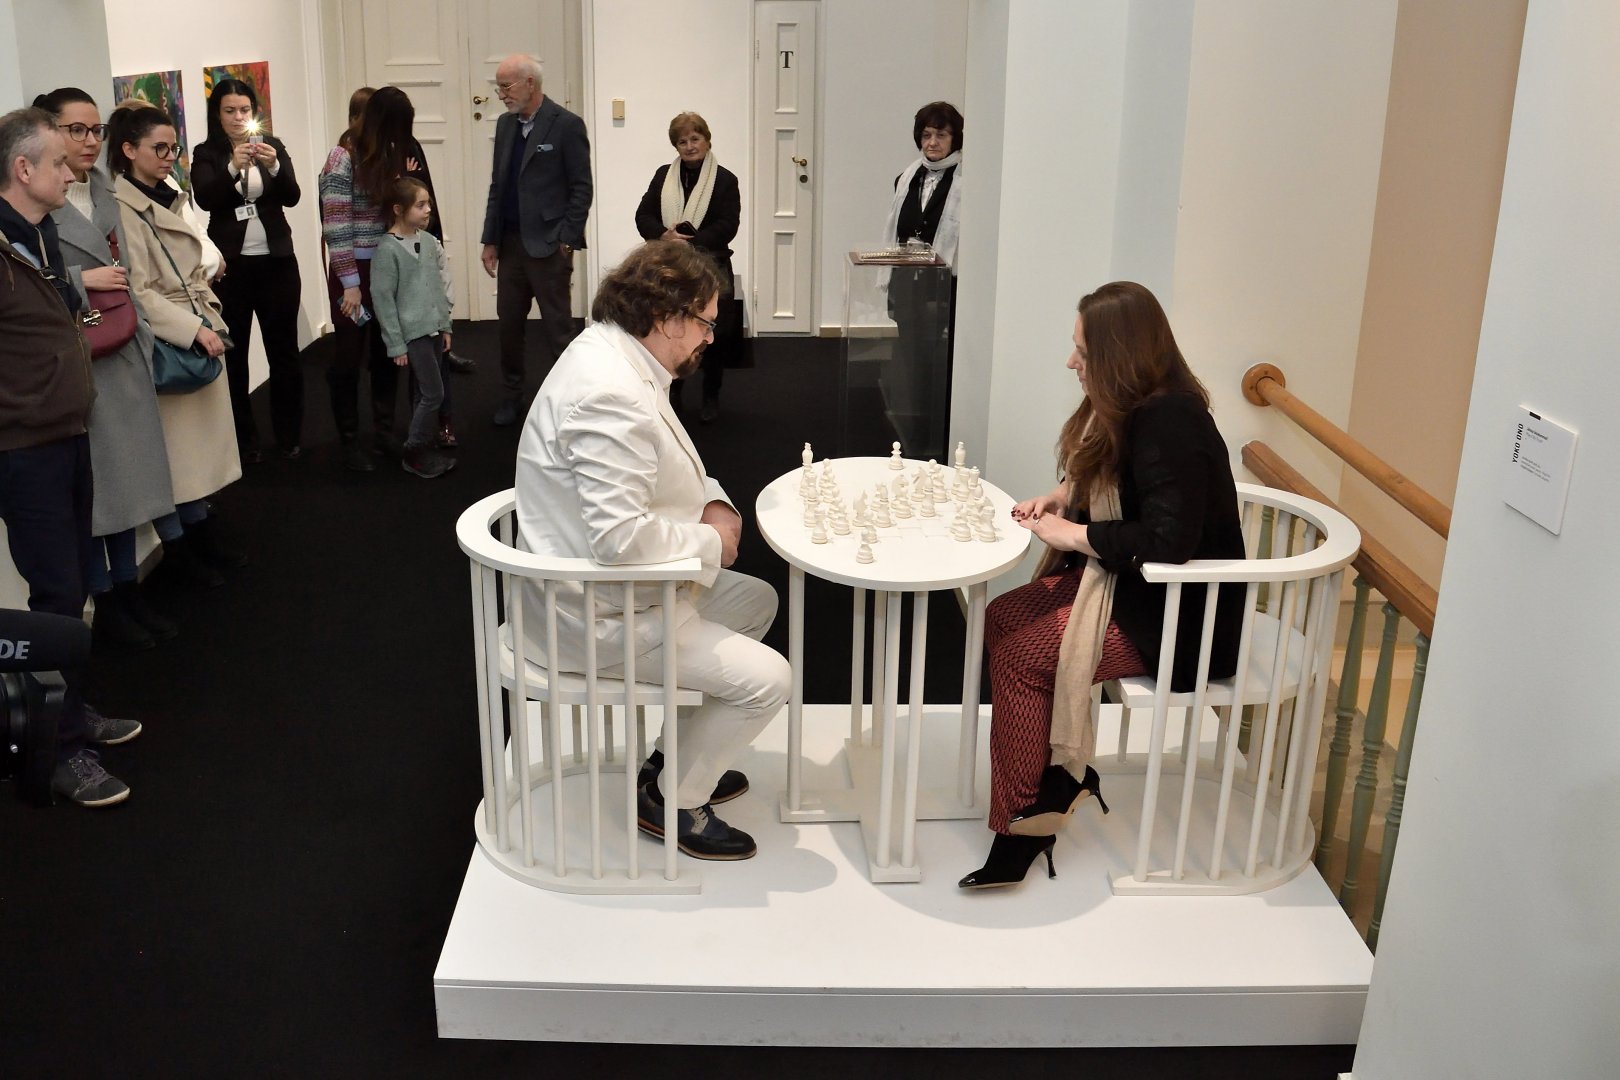 Polgár Judit nemzetközi sakknagymester és Gulyás Gábor kurátor performansza - fehér mezőkön fehér bábukkal játszanak egy sakkpartit - a Magyar Nemzeti Múzeum A háborúnak vége! Ha akarod - Tribute to Yoko Ono című kamarakiállításán - forrás: MTI/Lakatos Péter